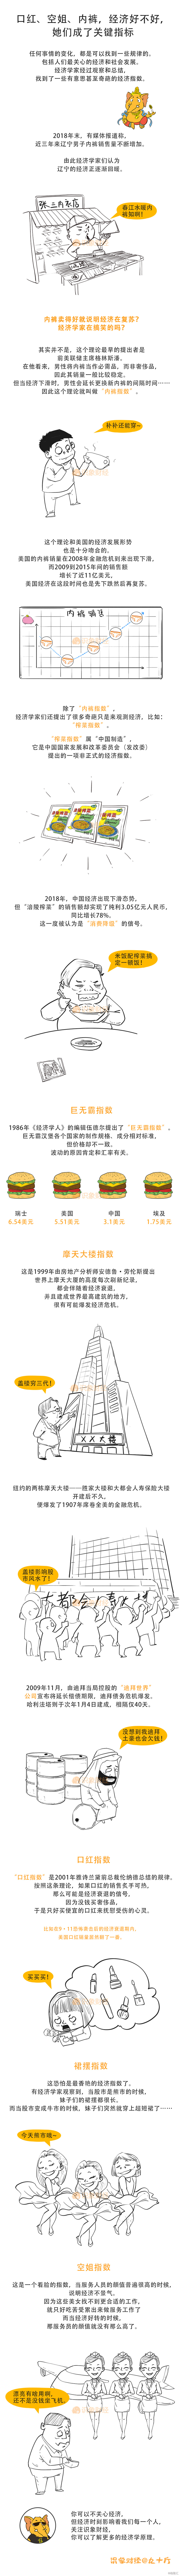 20190124奇葩经济指数(1).jpg